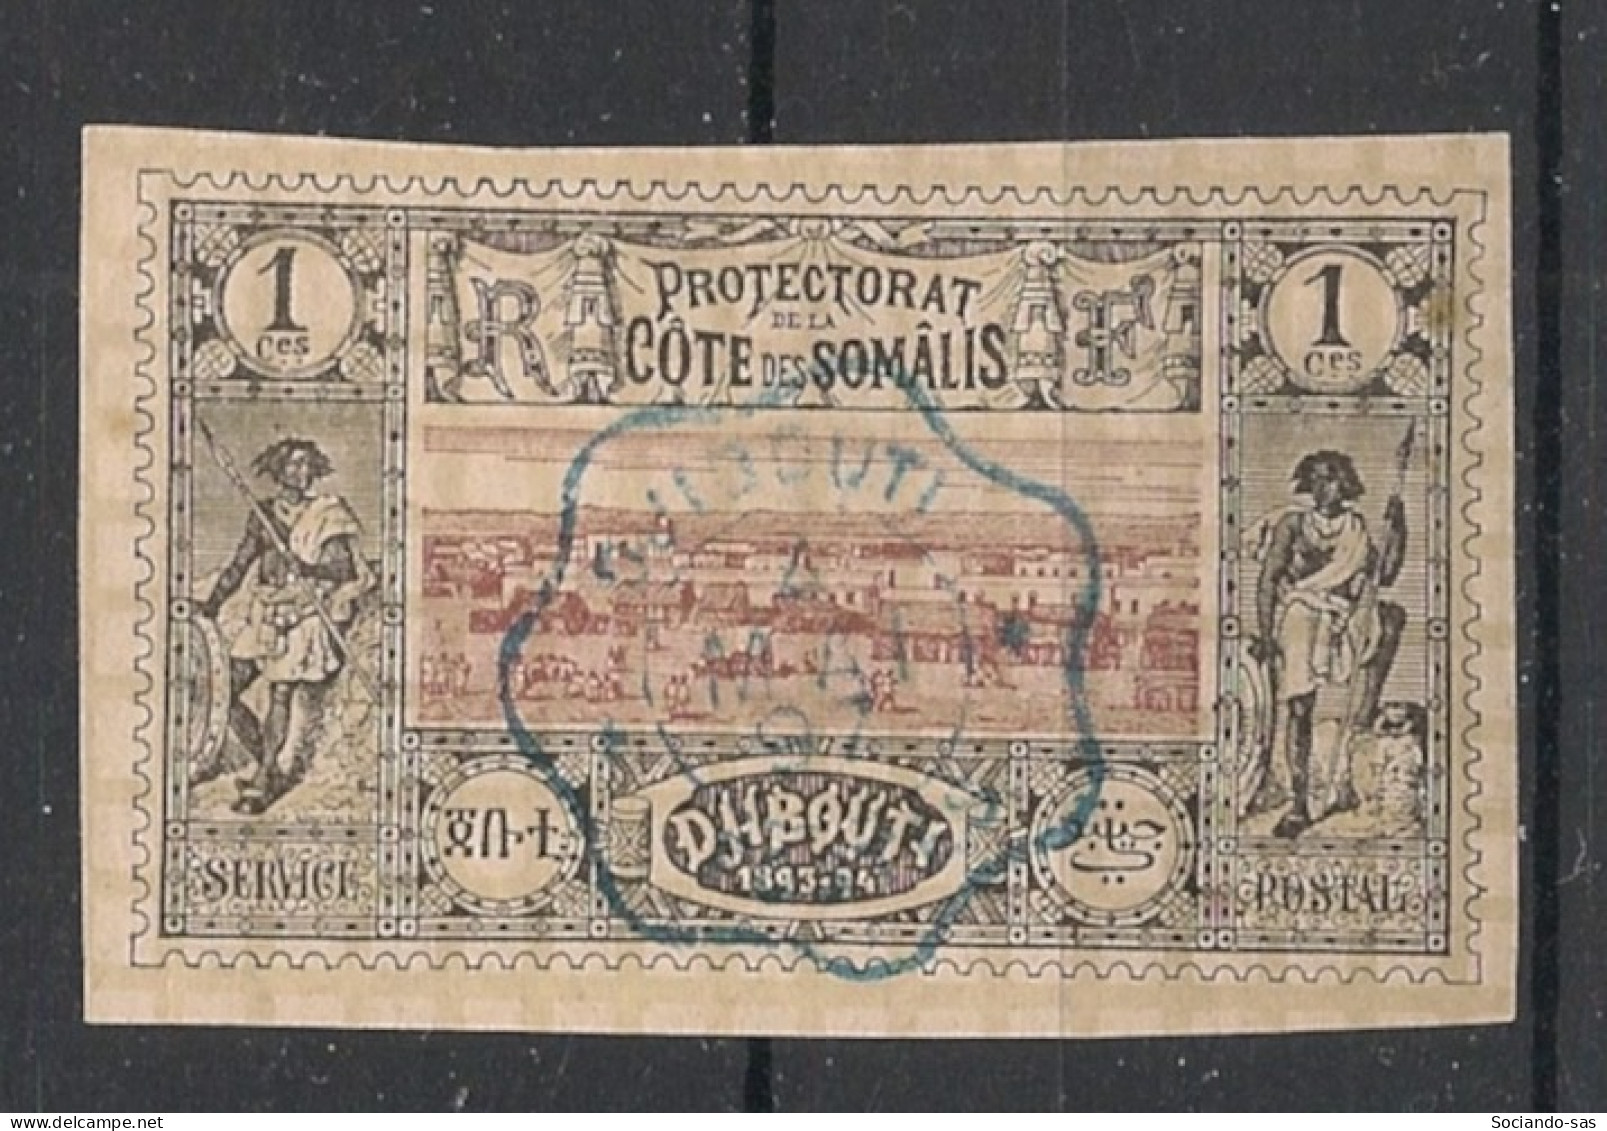 COTE DES SOMALIS - 1894-1900 - N°YT. 6 - Vue De Djibouti 1c Noir - Oblitéré / Used - Used Stamps